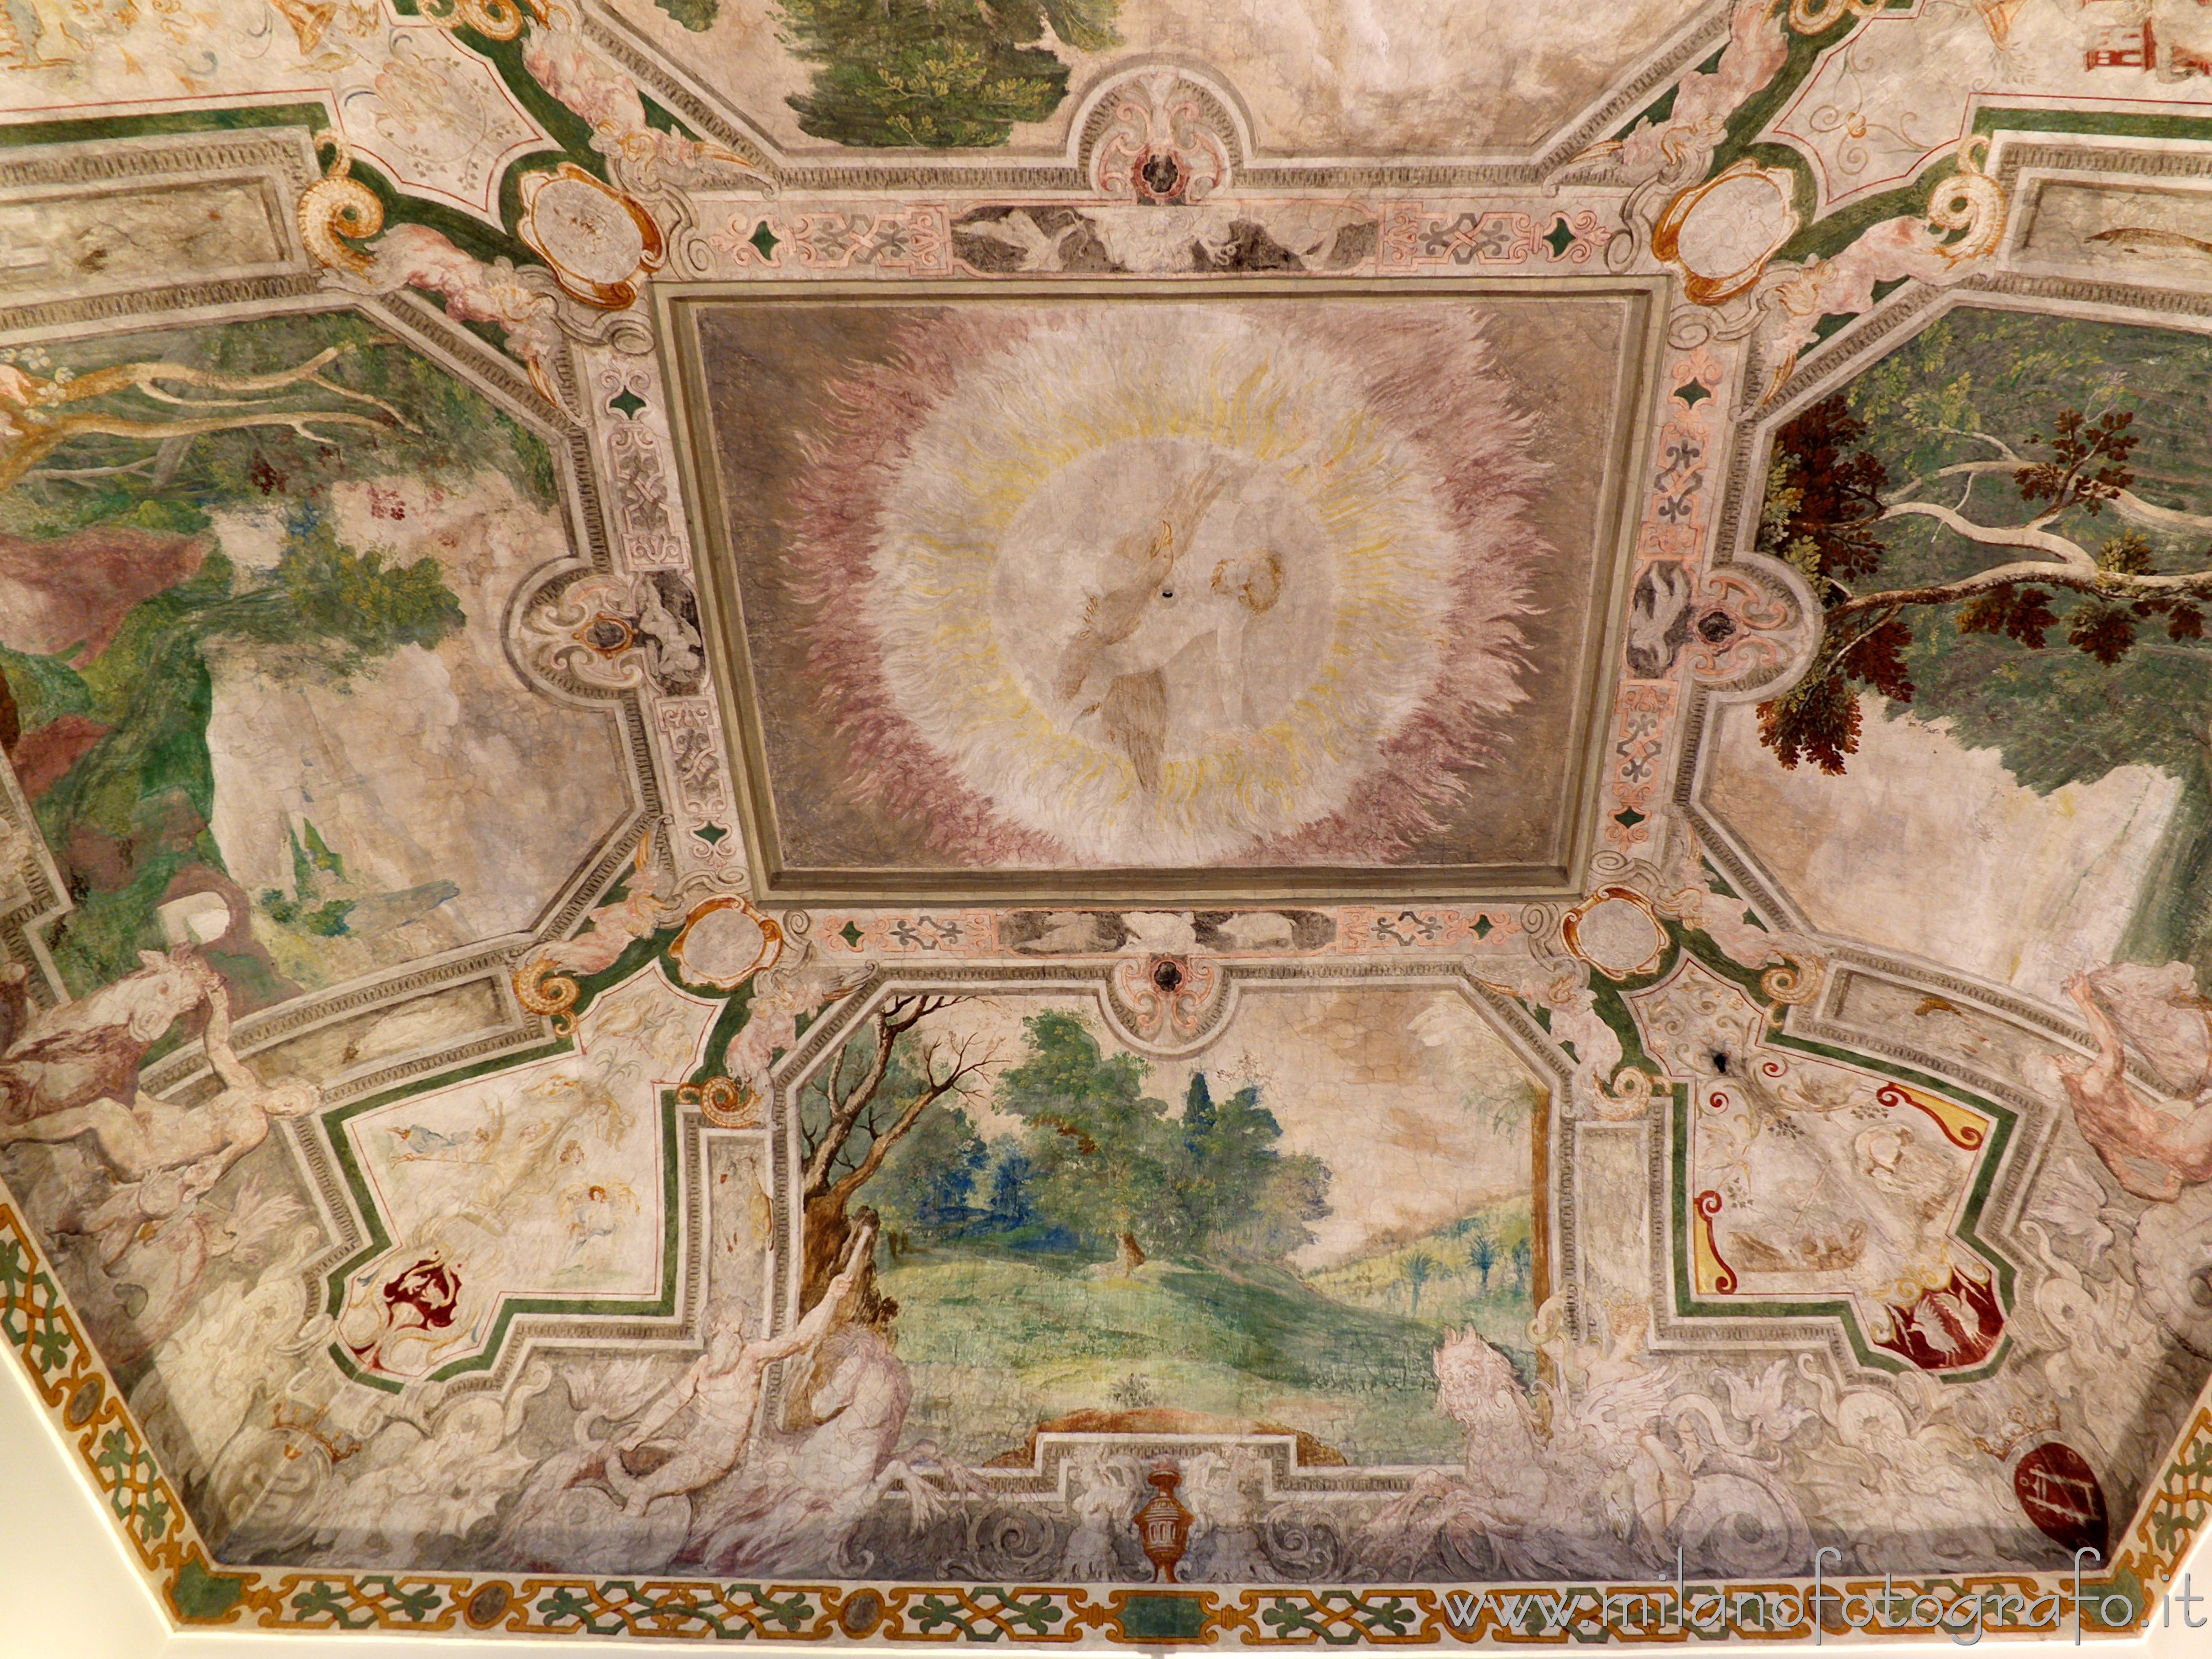 Cavenago di Brianza (Monza e Brianza, Italy): Vault of the Jupiter Hall in Palace Rasini - Cavenago di Brianza (Monza e Brianza, Italy)